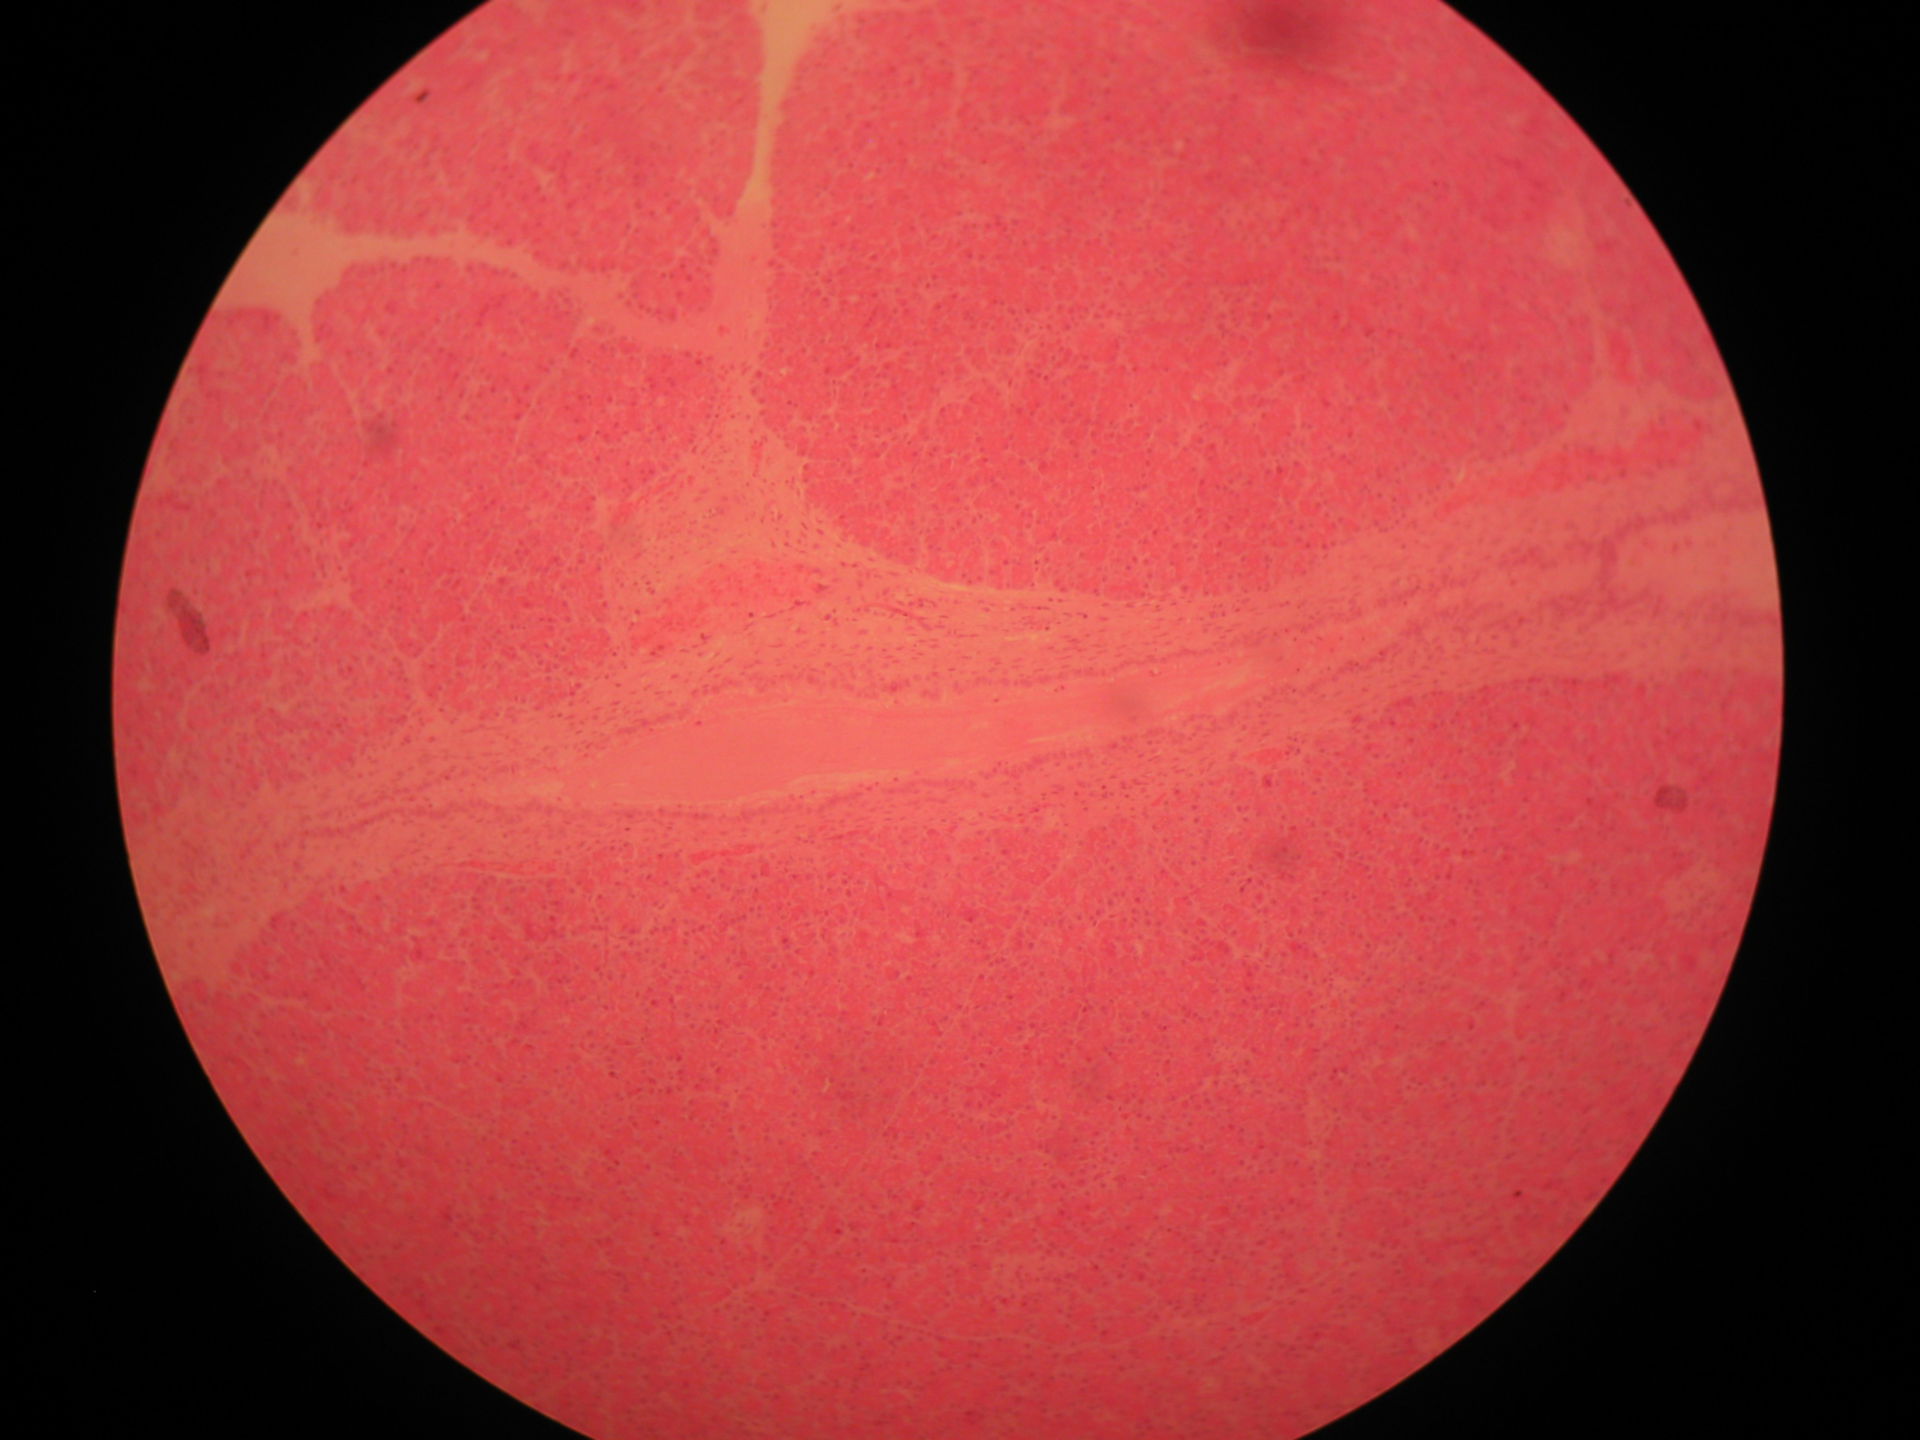 Pankreas des Schafes - Ductulus interlobularis